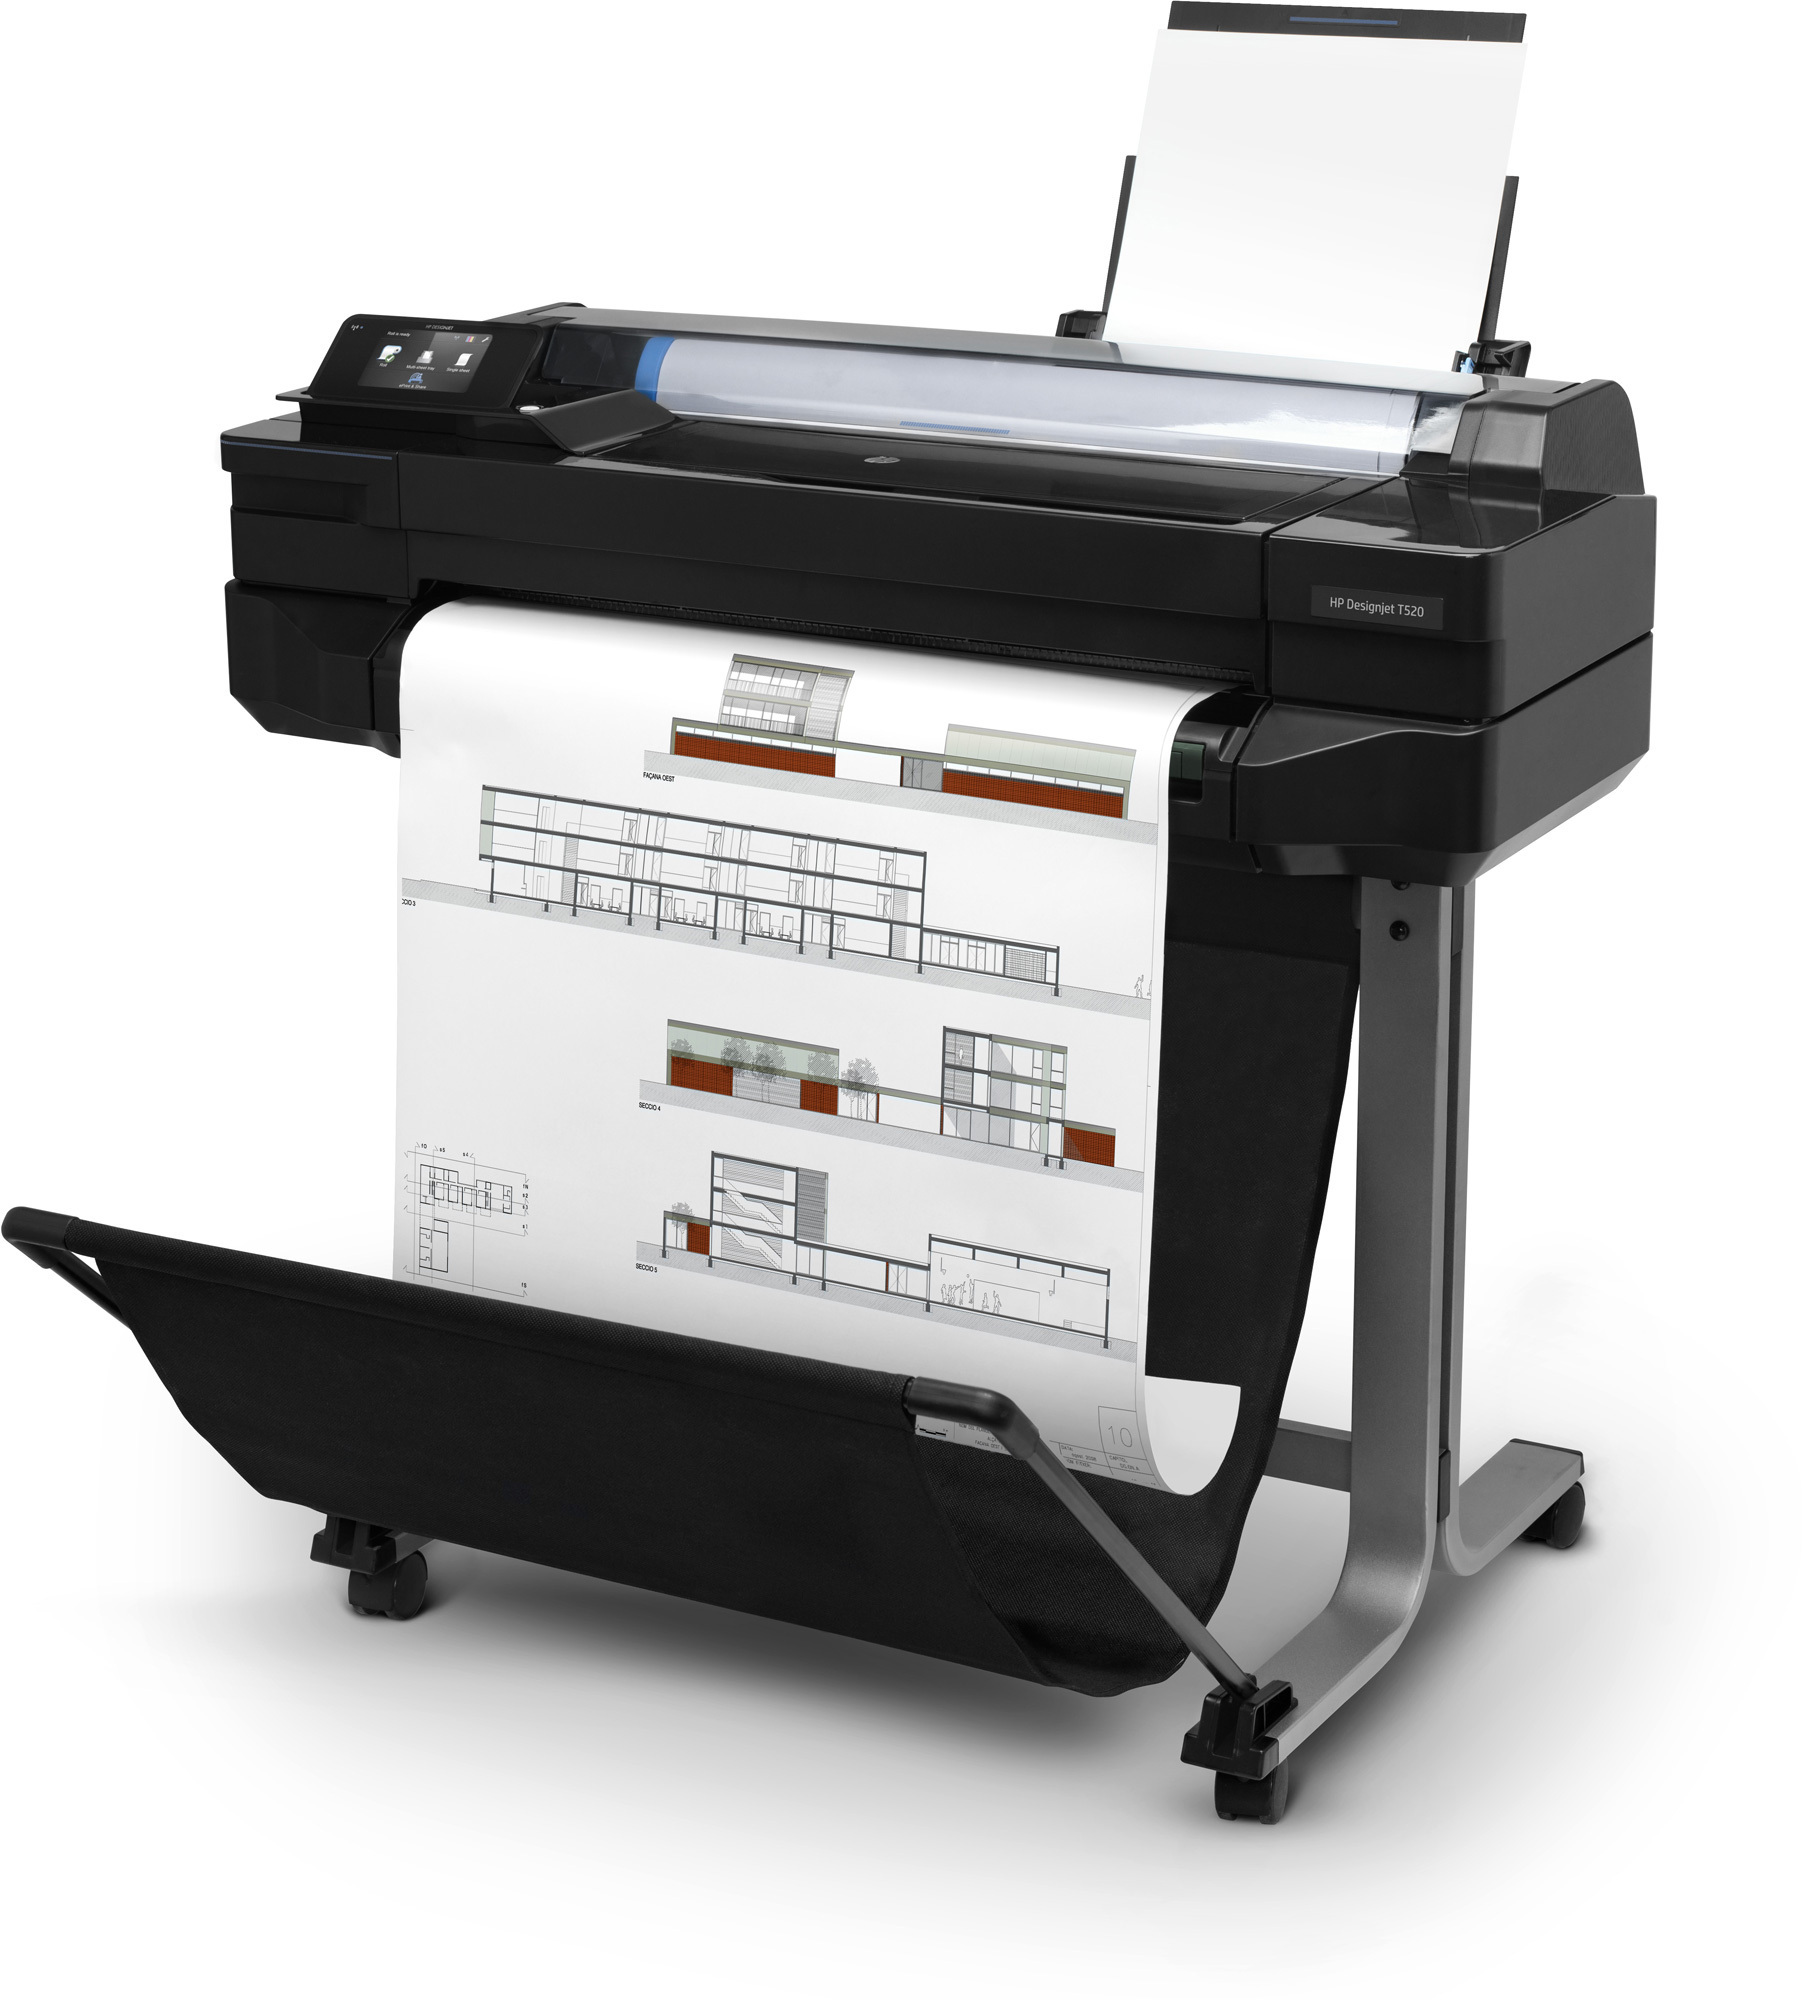 traceurs techniques Hewlett Packard pour imprimer vos plans, dessins de CAO